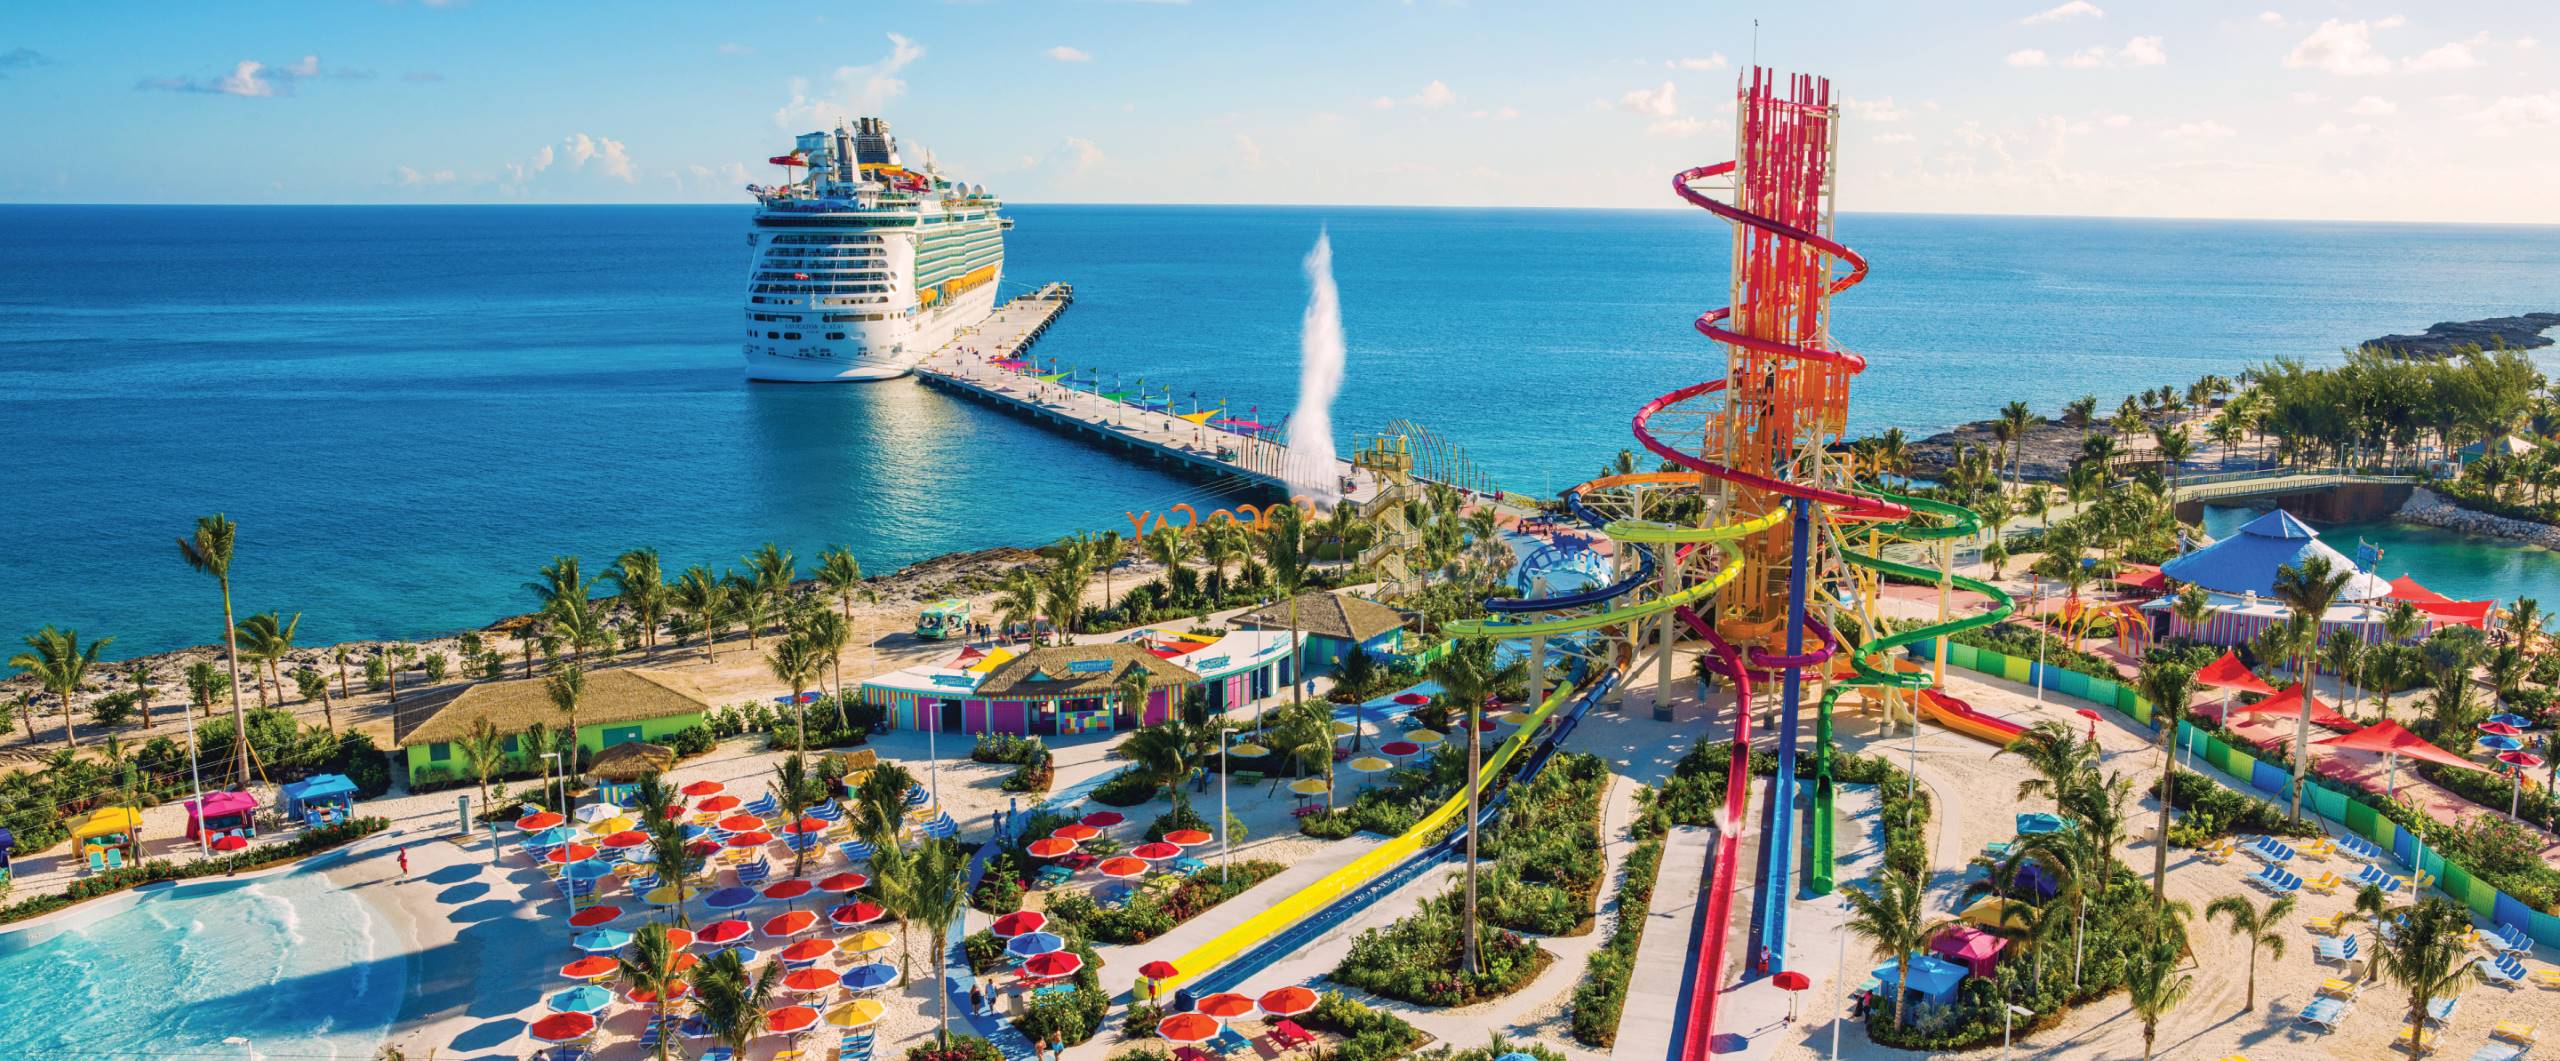 A Caribbean cruise